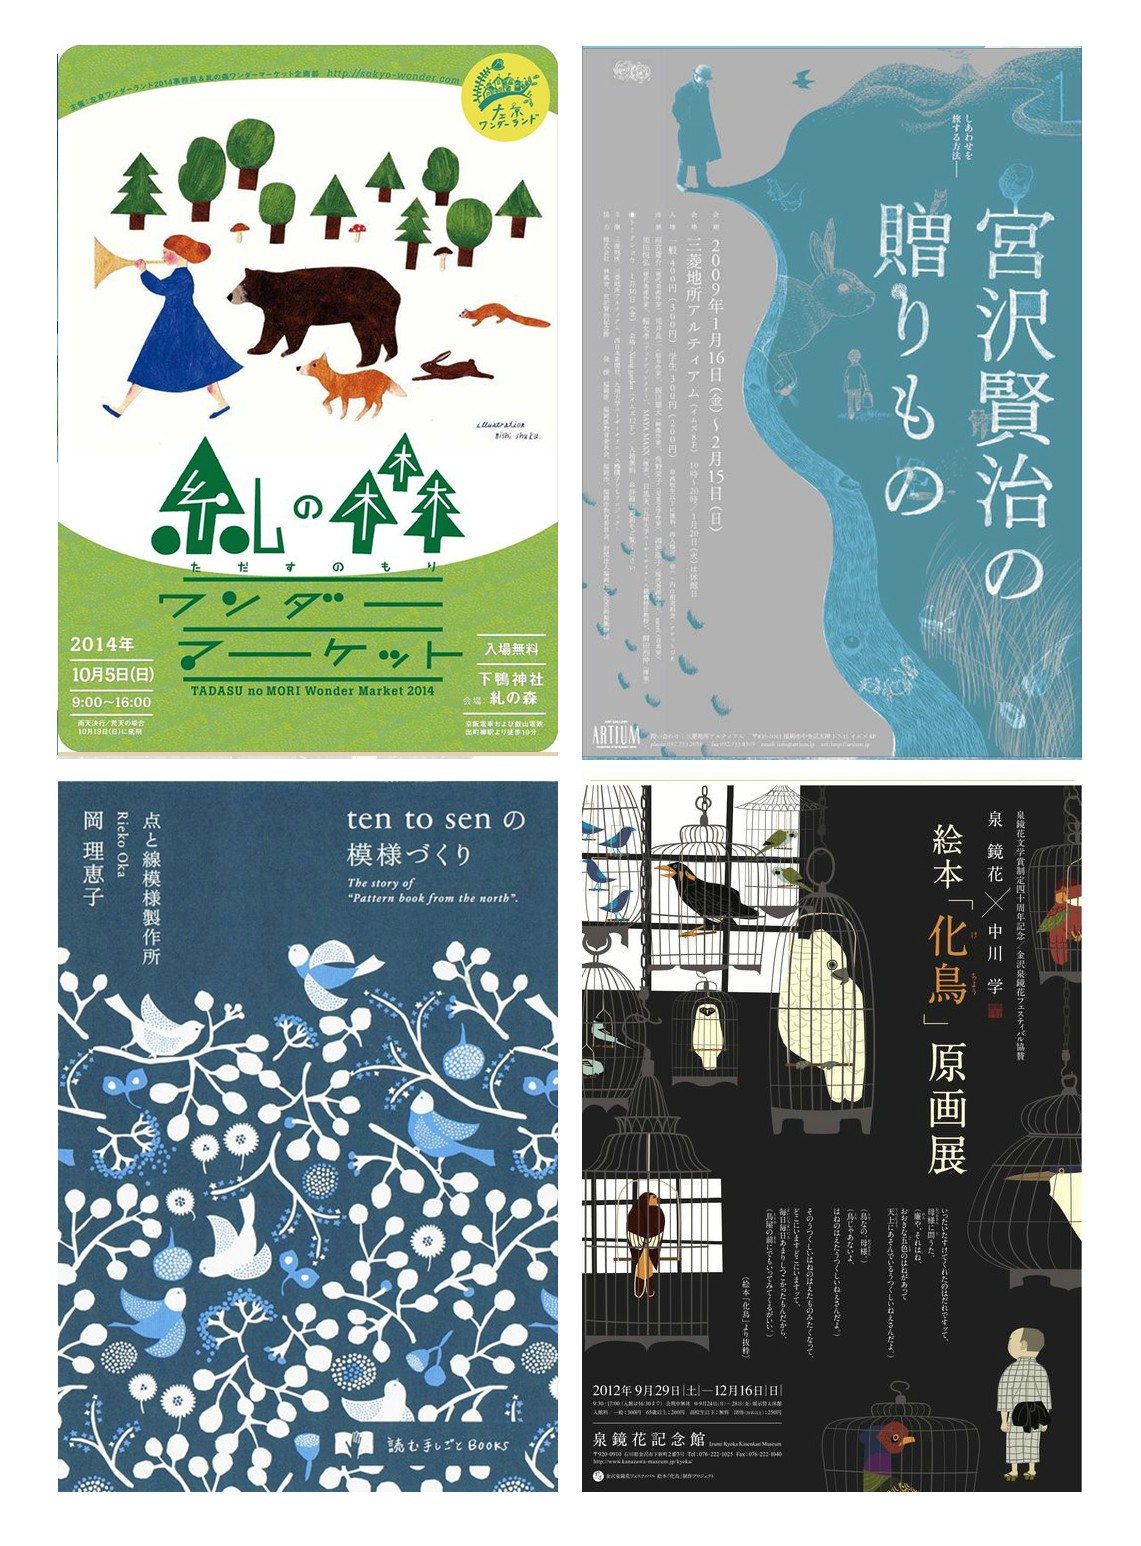 自然的馈赠！日本森系海报作品